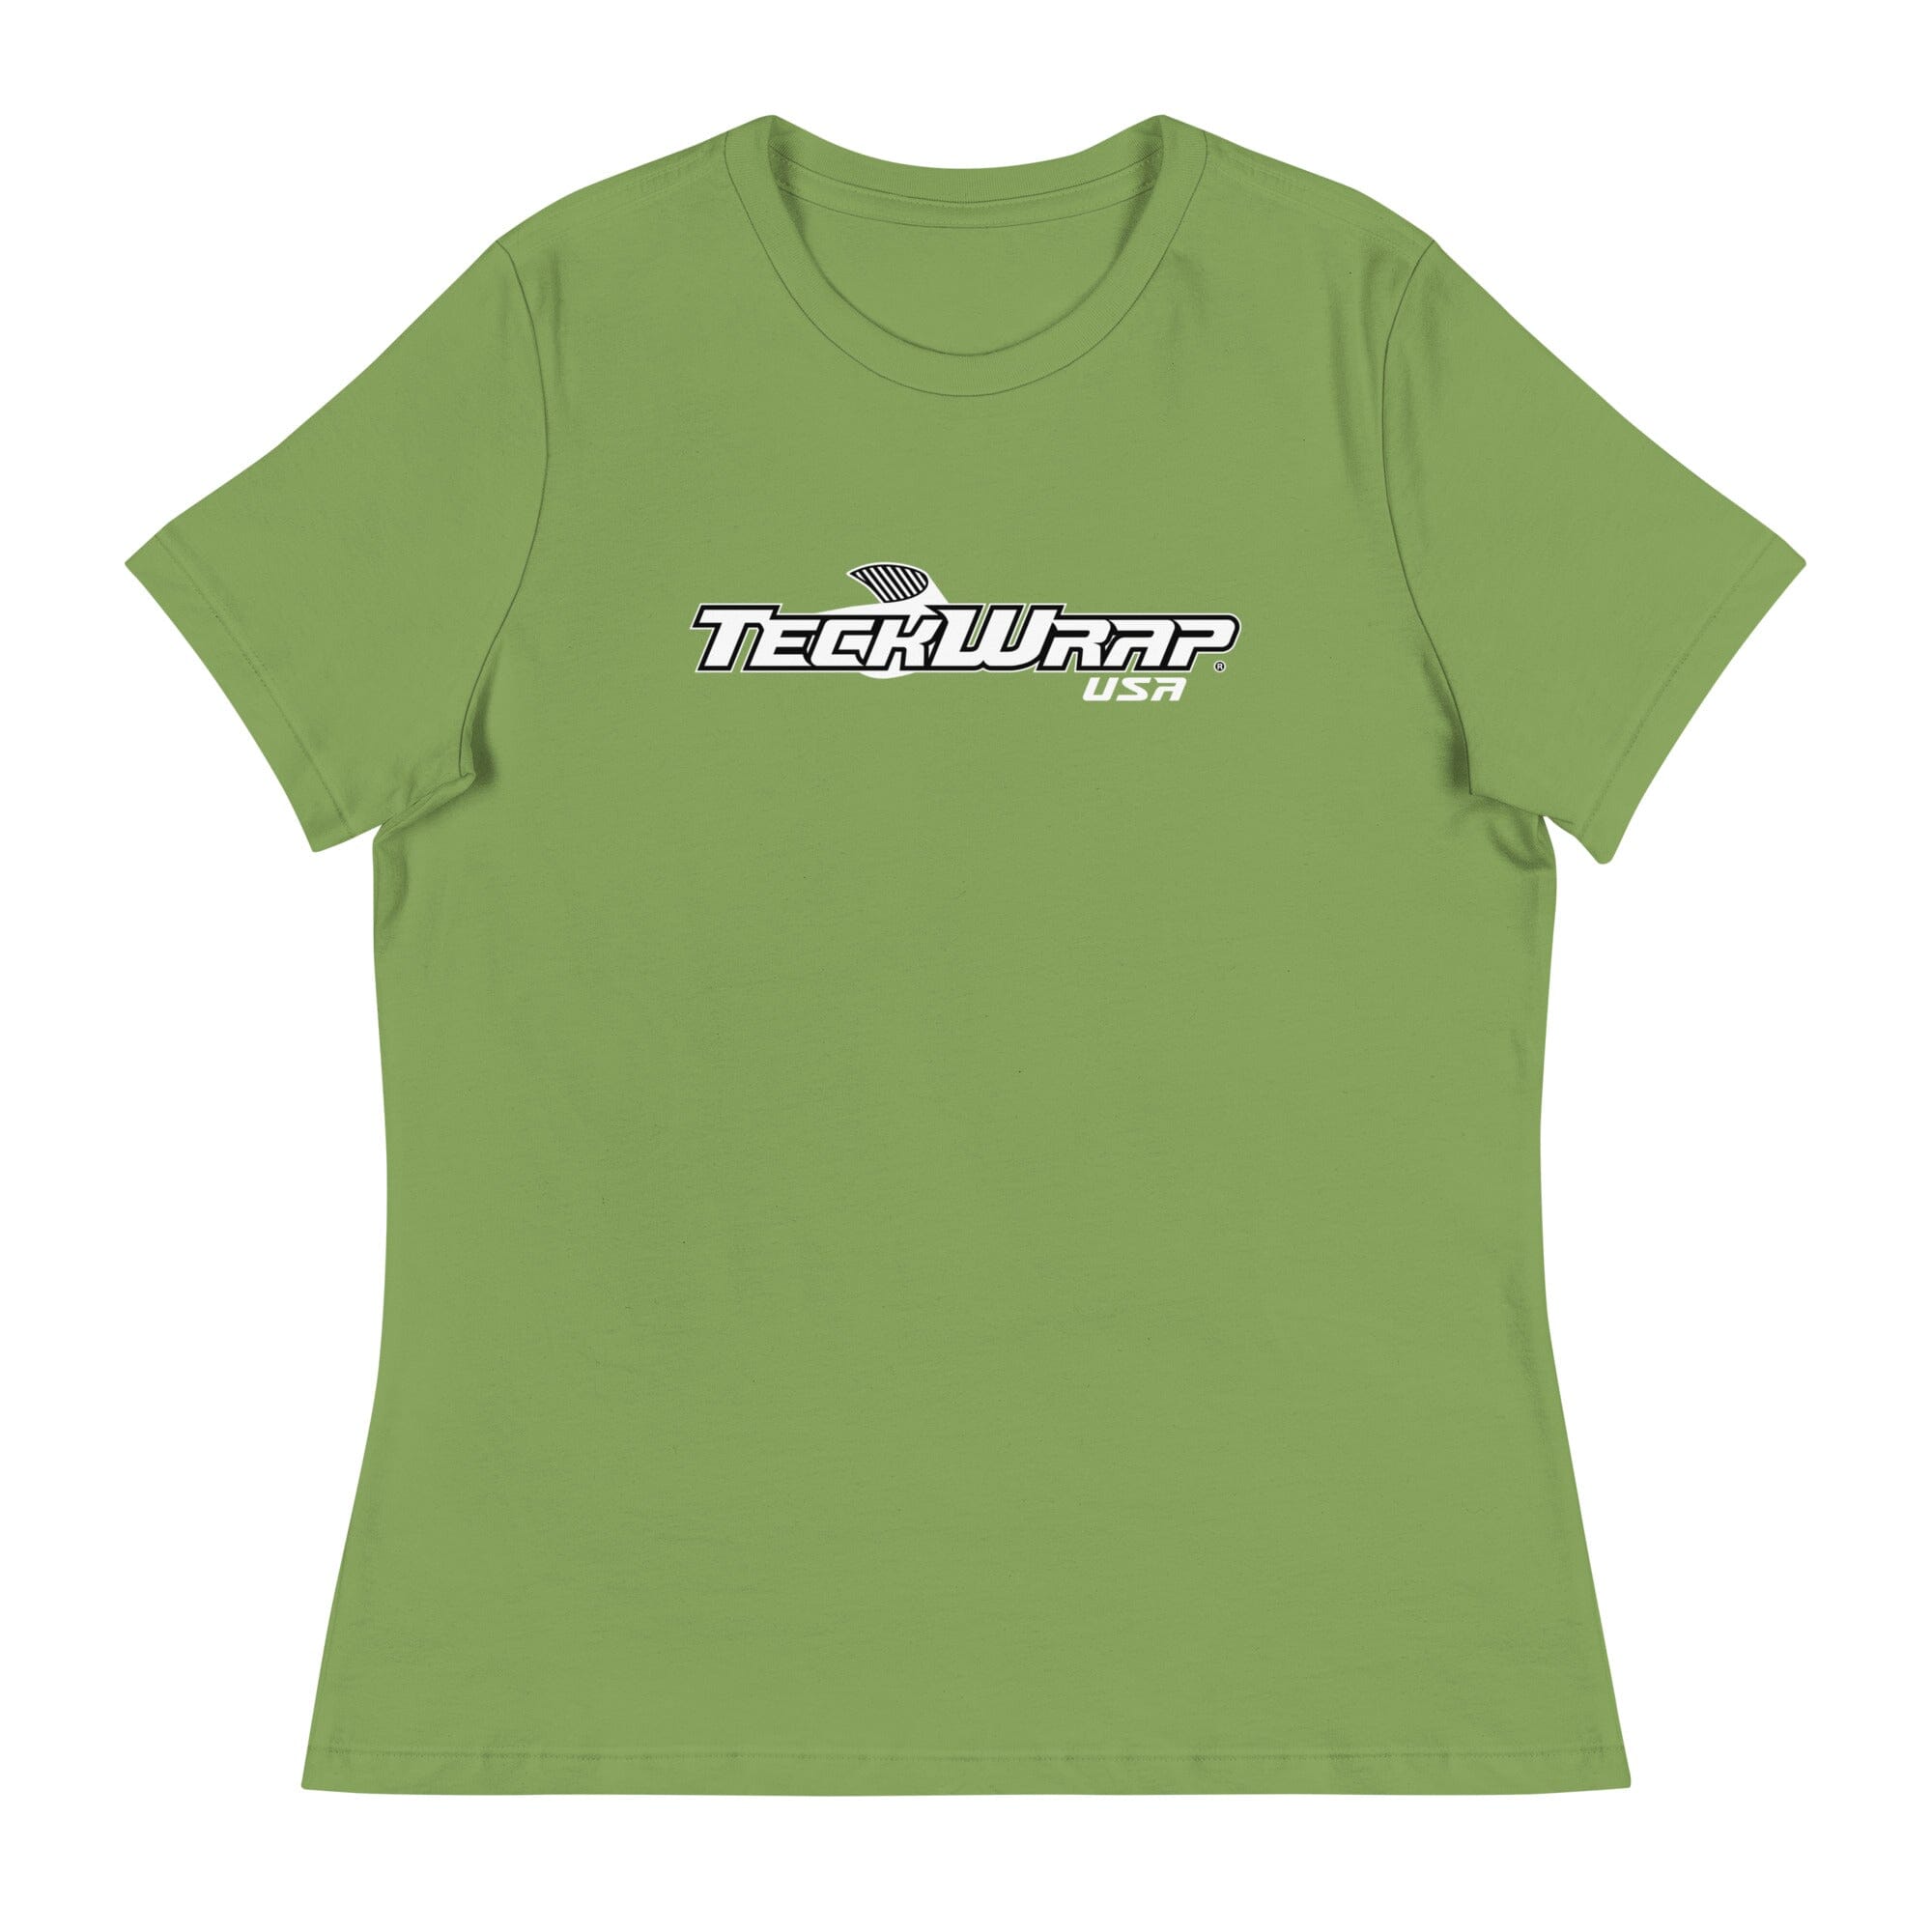 Women's TeckWrap Shirt Teckwrap USA Leaf S 